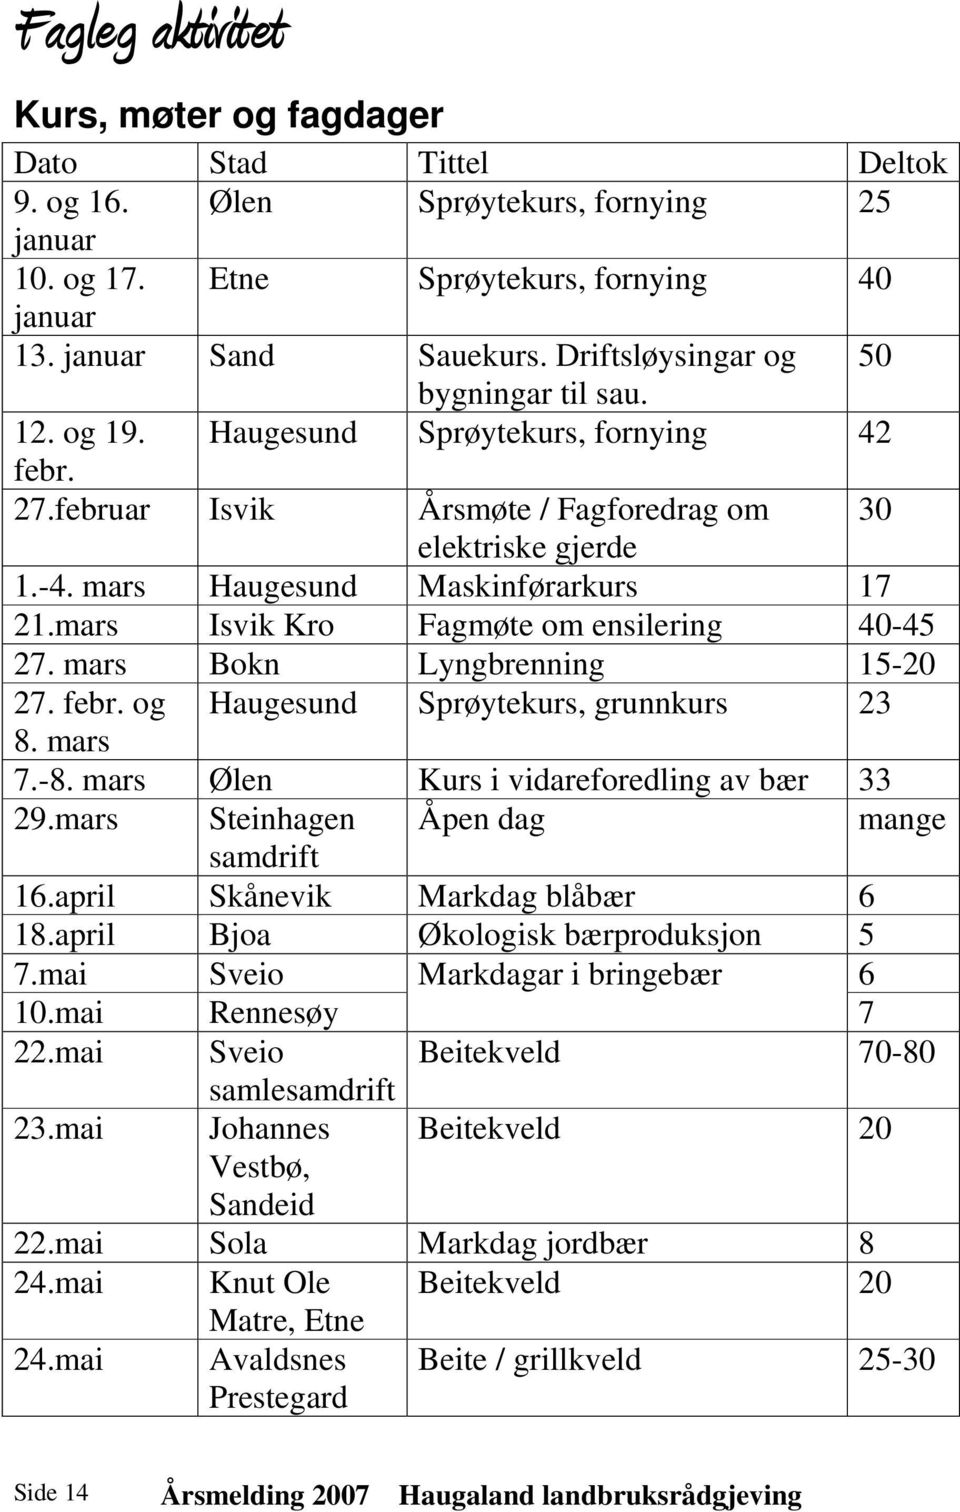 mars Isvik Kro Fagmøte om ensilering 40-45 27. mars Bokn Lyngbrenning 15-20 27. febr. og Haugesund Sprøytekurs, grunnkurs 23 8. mars 7.-8. mars Ølen Kurs i vidareforedling av bær 33 29.